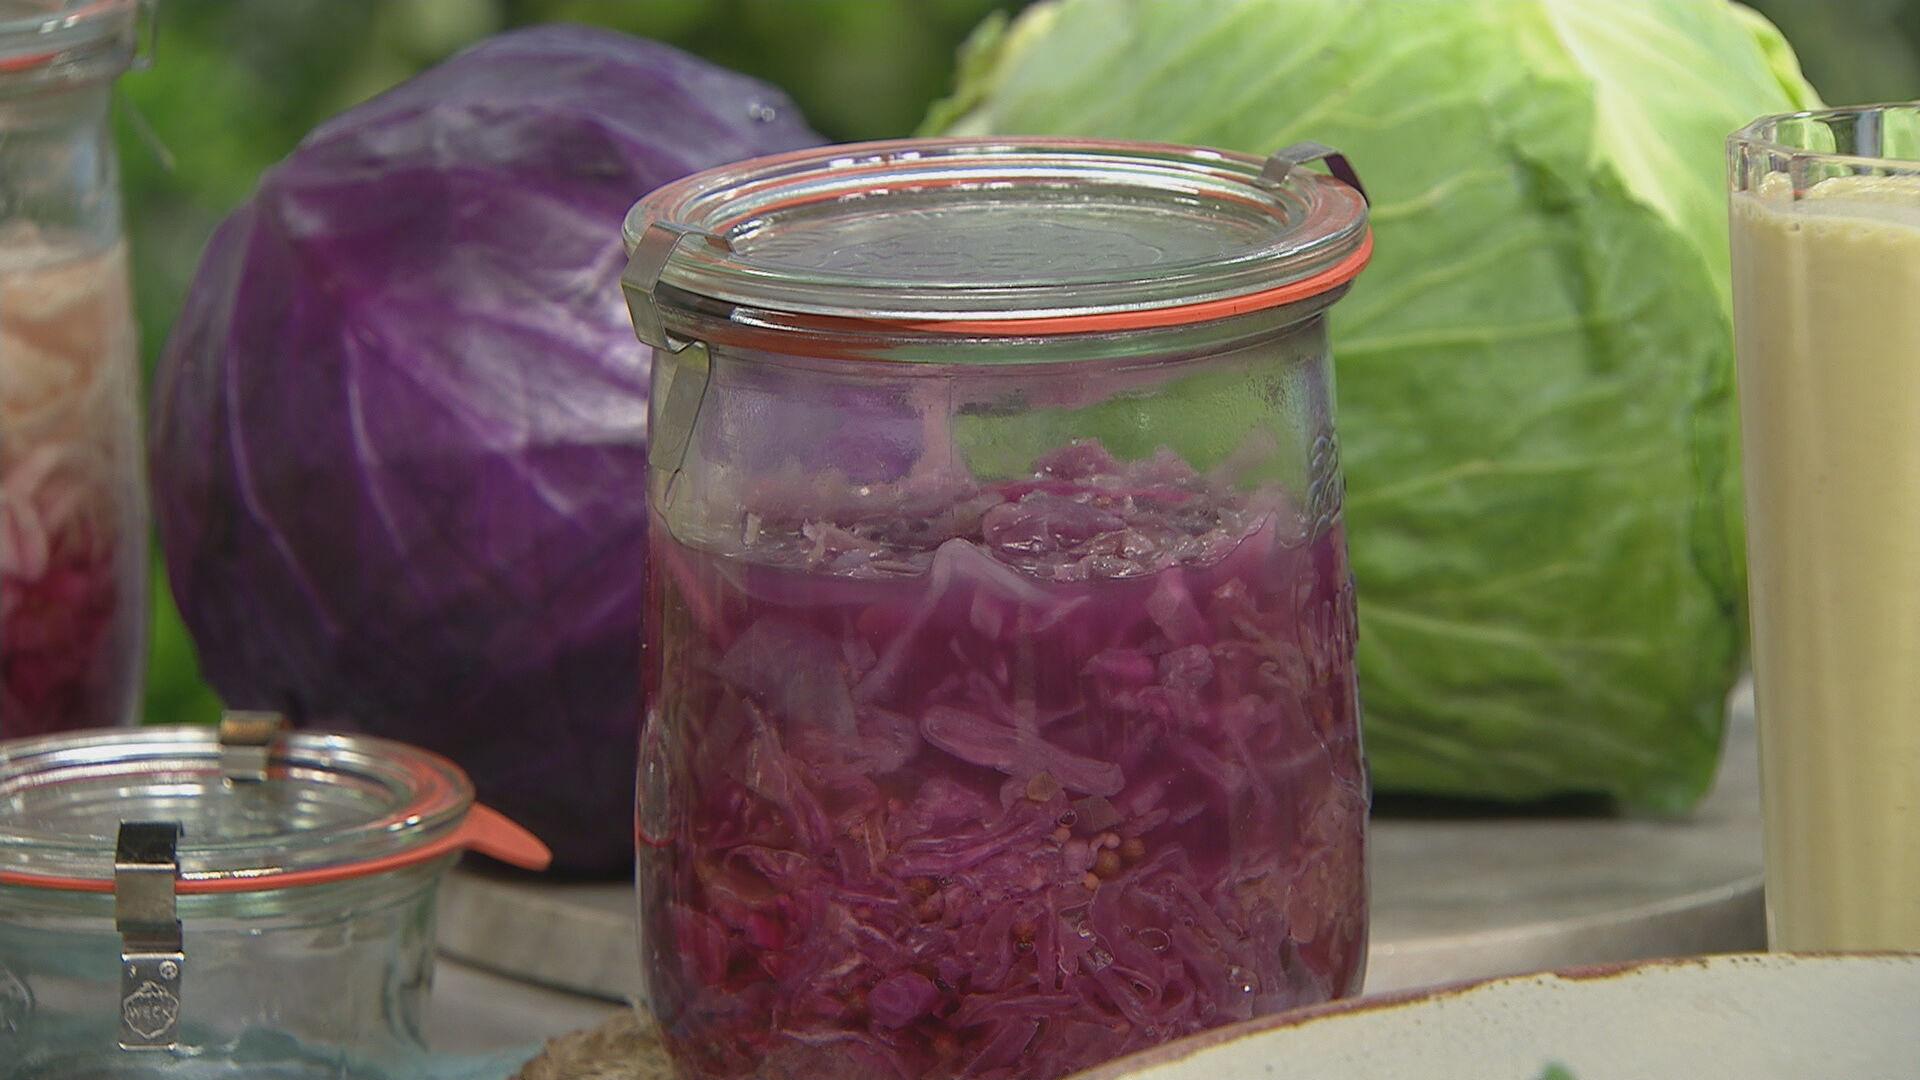 Mise en place sauerkraut